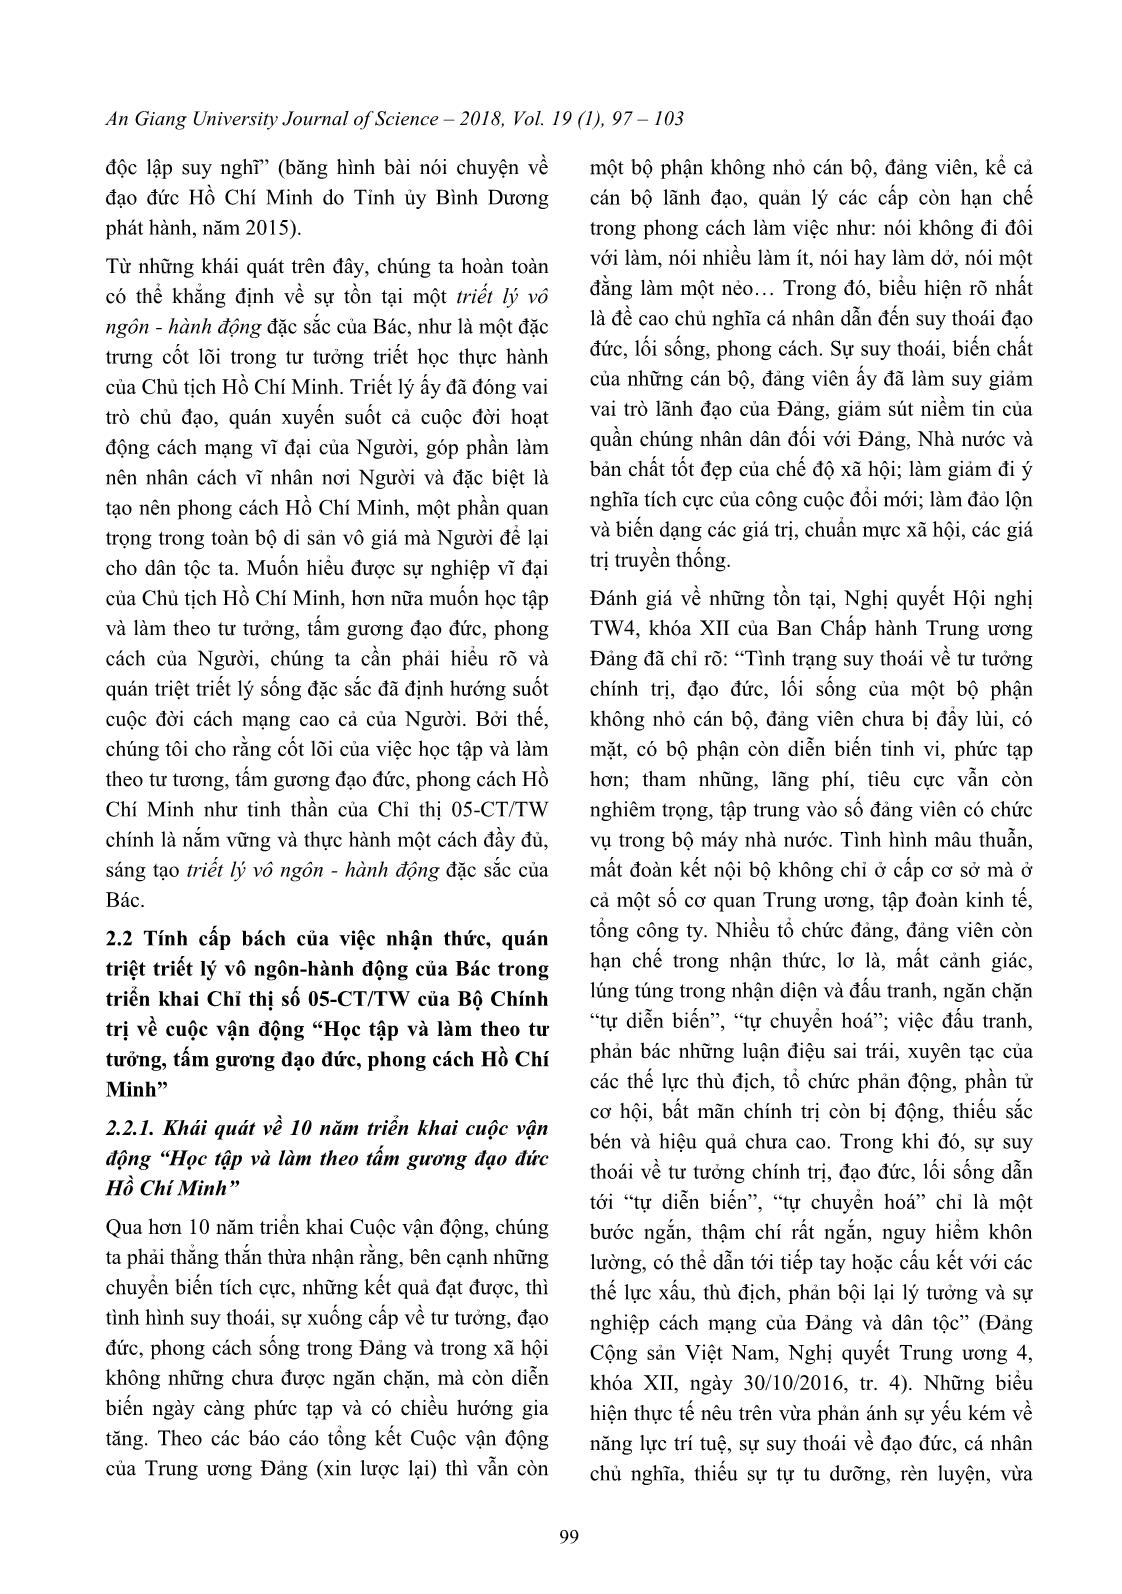 Vận dụng triết lý vô ngôn - Hành động của Bác Hồ trong triển khai “Học tập và làm theo tư tưởng, tấm gương đạo đức, phong cách Hồ Chí Minh” trang 3